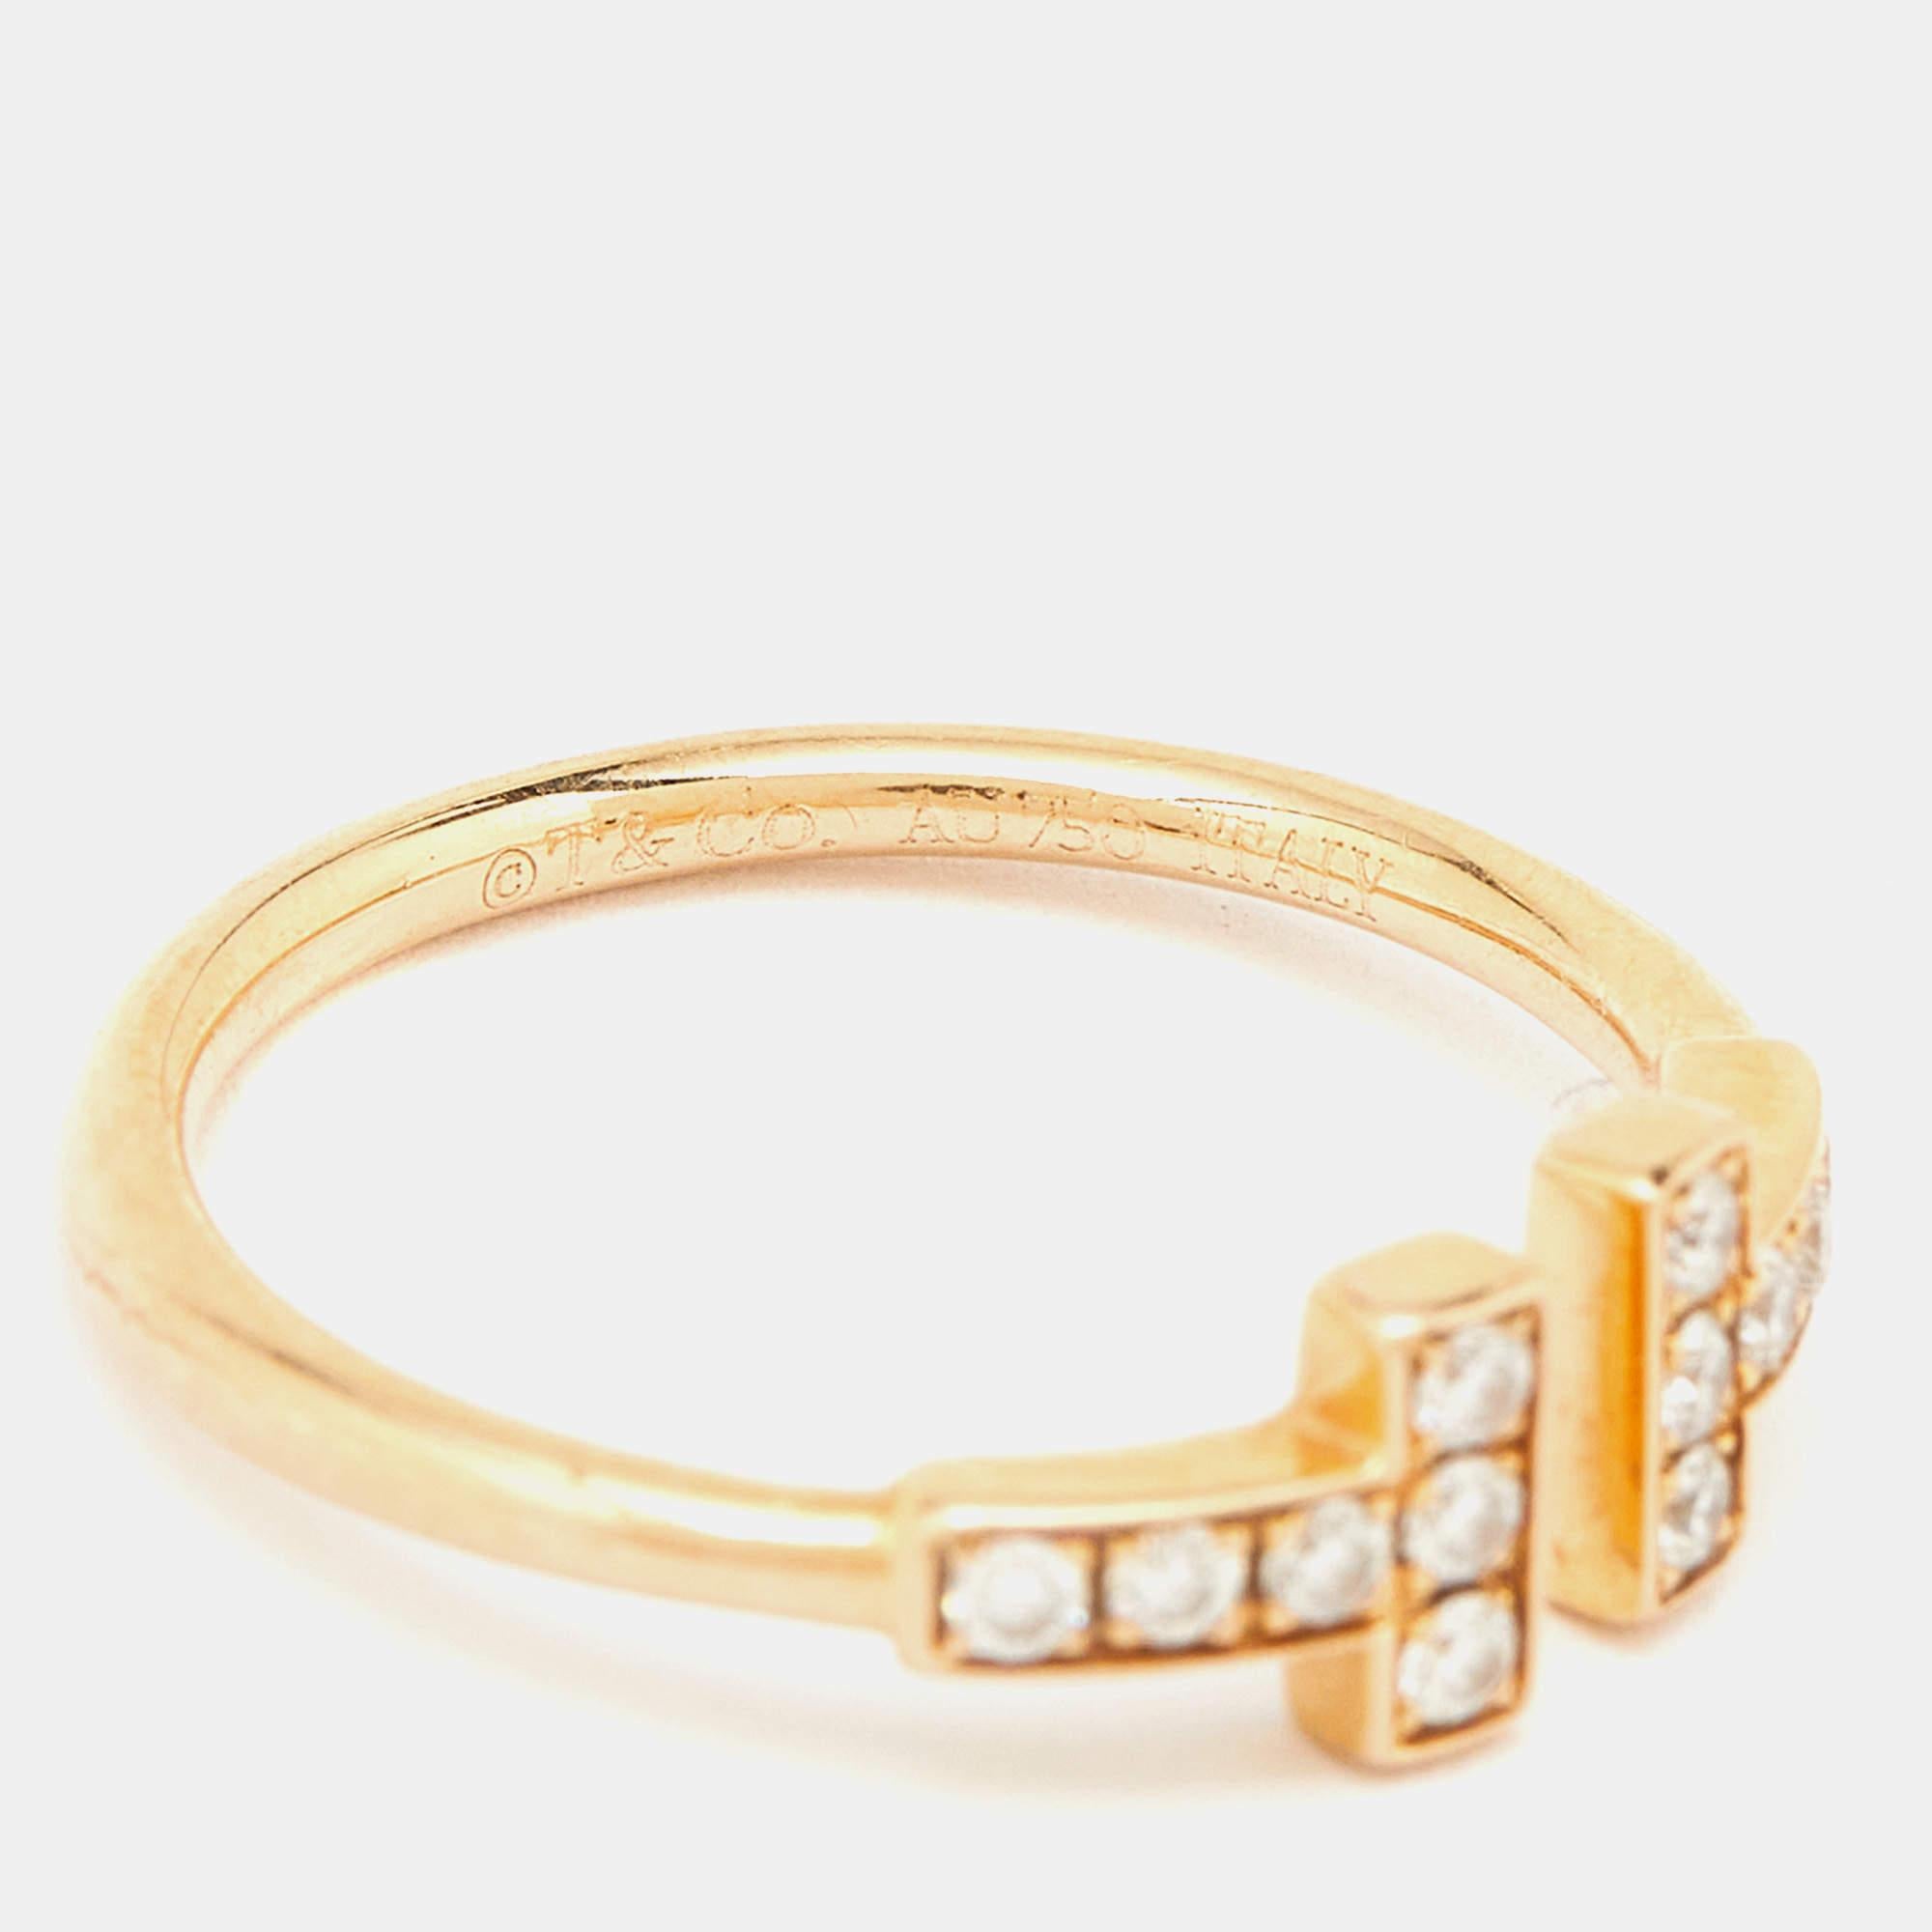 Erhöhen Sie Ihren Stil mit der zeitlosen Eleganz der Tiffany & Co. Twire-Ring. Das mit viel Liebe zum Detail gefertigte Schmuckstück ist mit einem zarten, ineinander verschlungenen Design versehen, das mit schimmernden Diamanten besetzt ist und bei